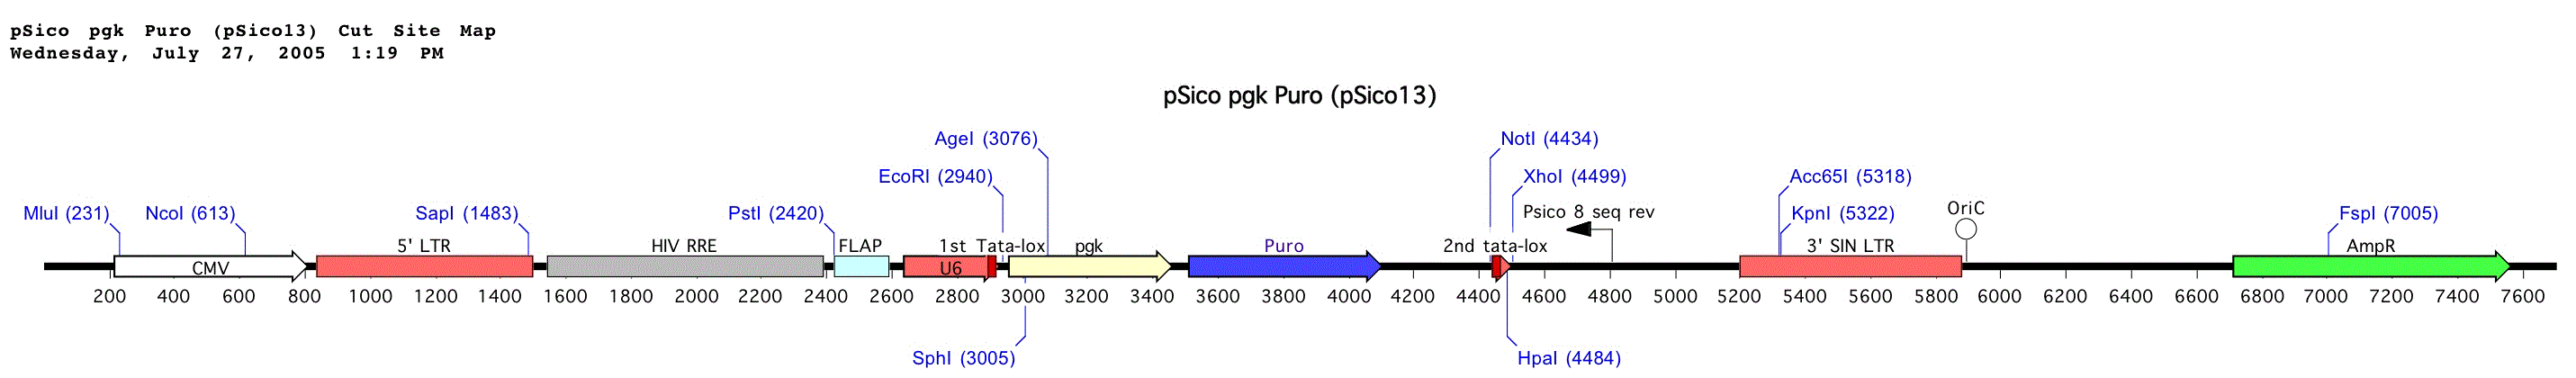 pSico PGK Puro载体图谱